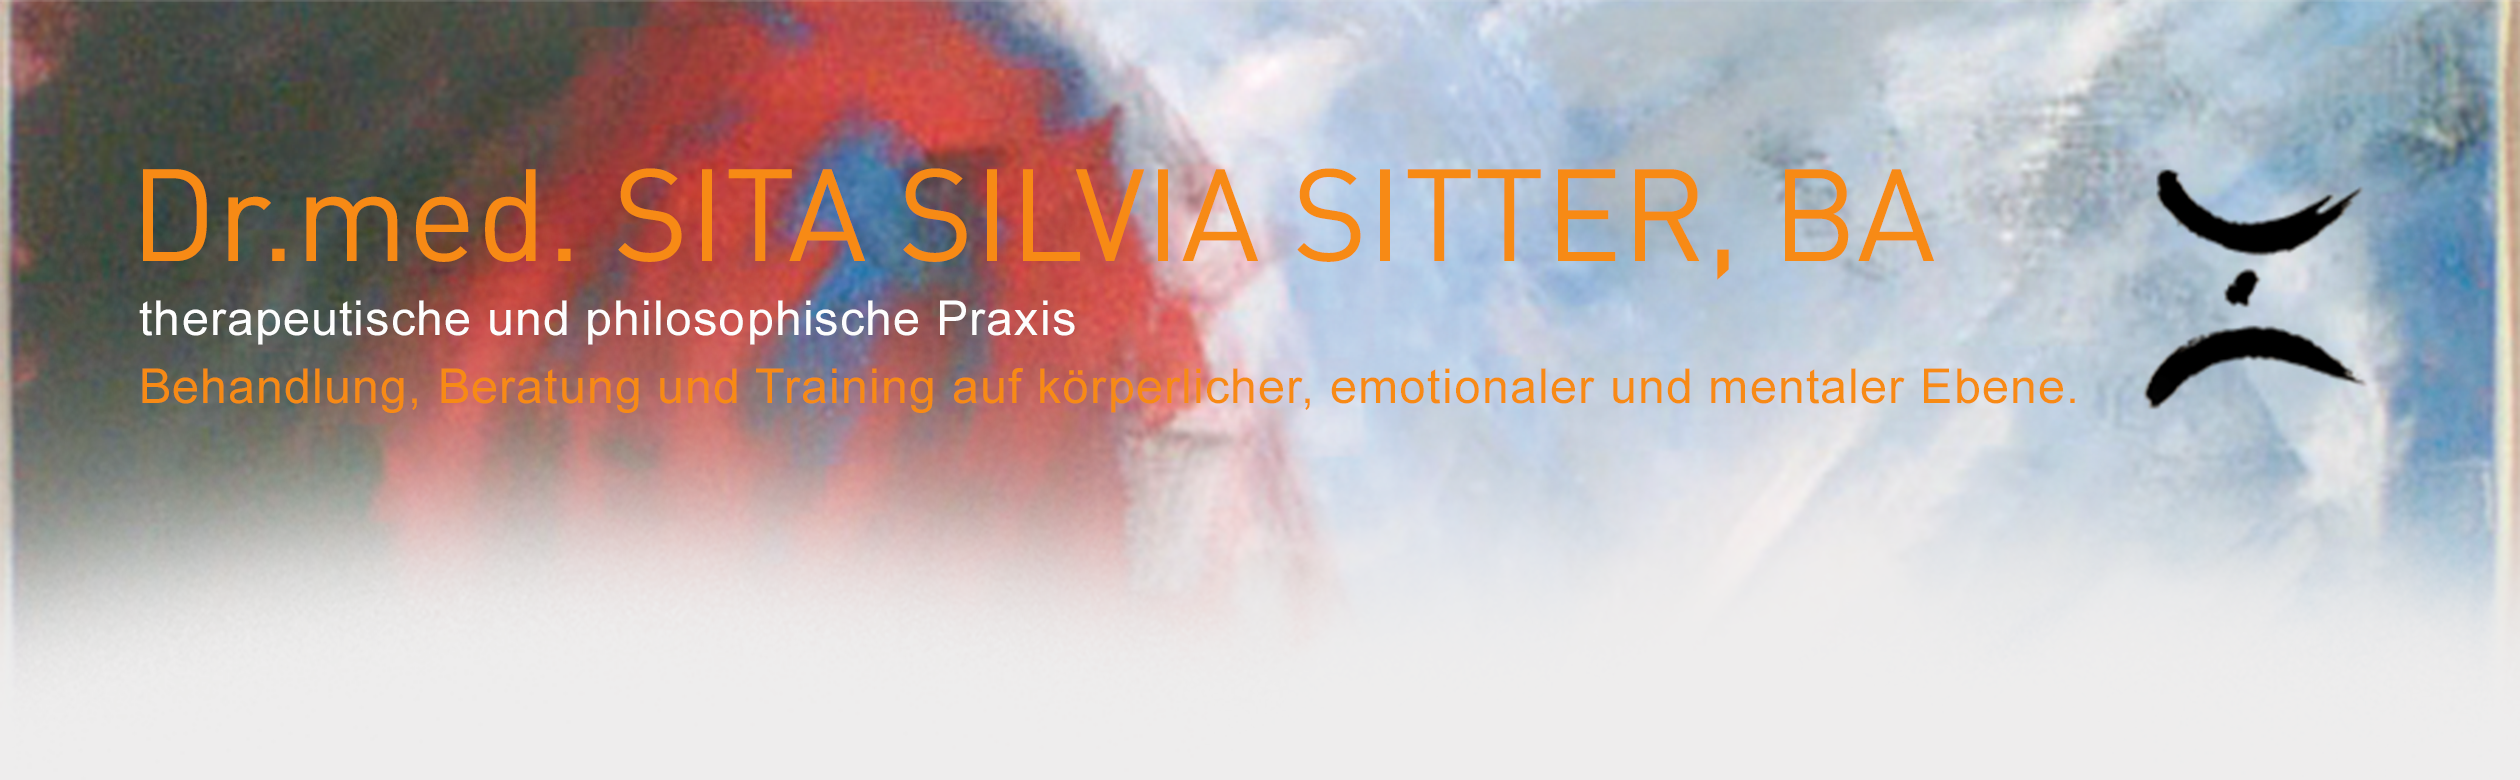 Dr. med. Sita Silvia Sitter. Behandlung, Beratung und Training auf k?rperlicher, emotionaler und mentaler Ebene